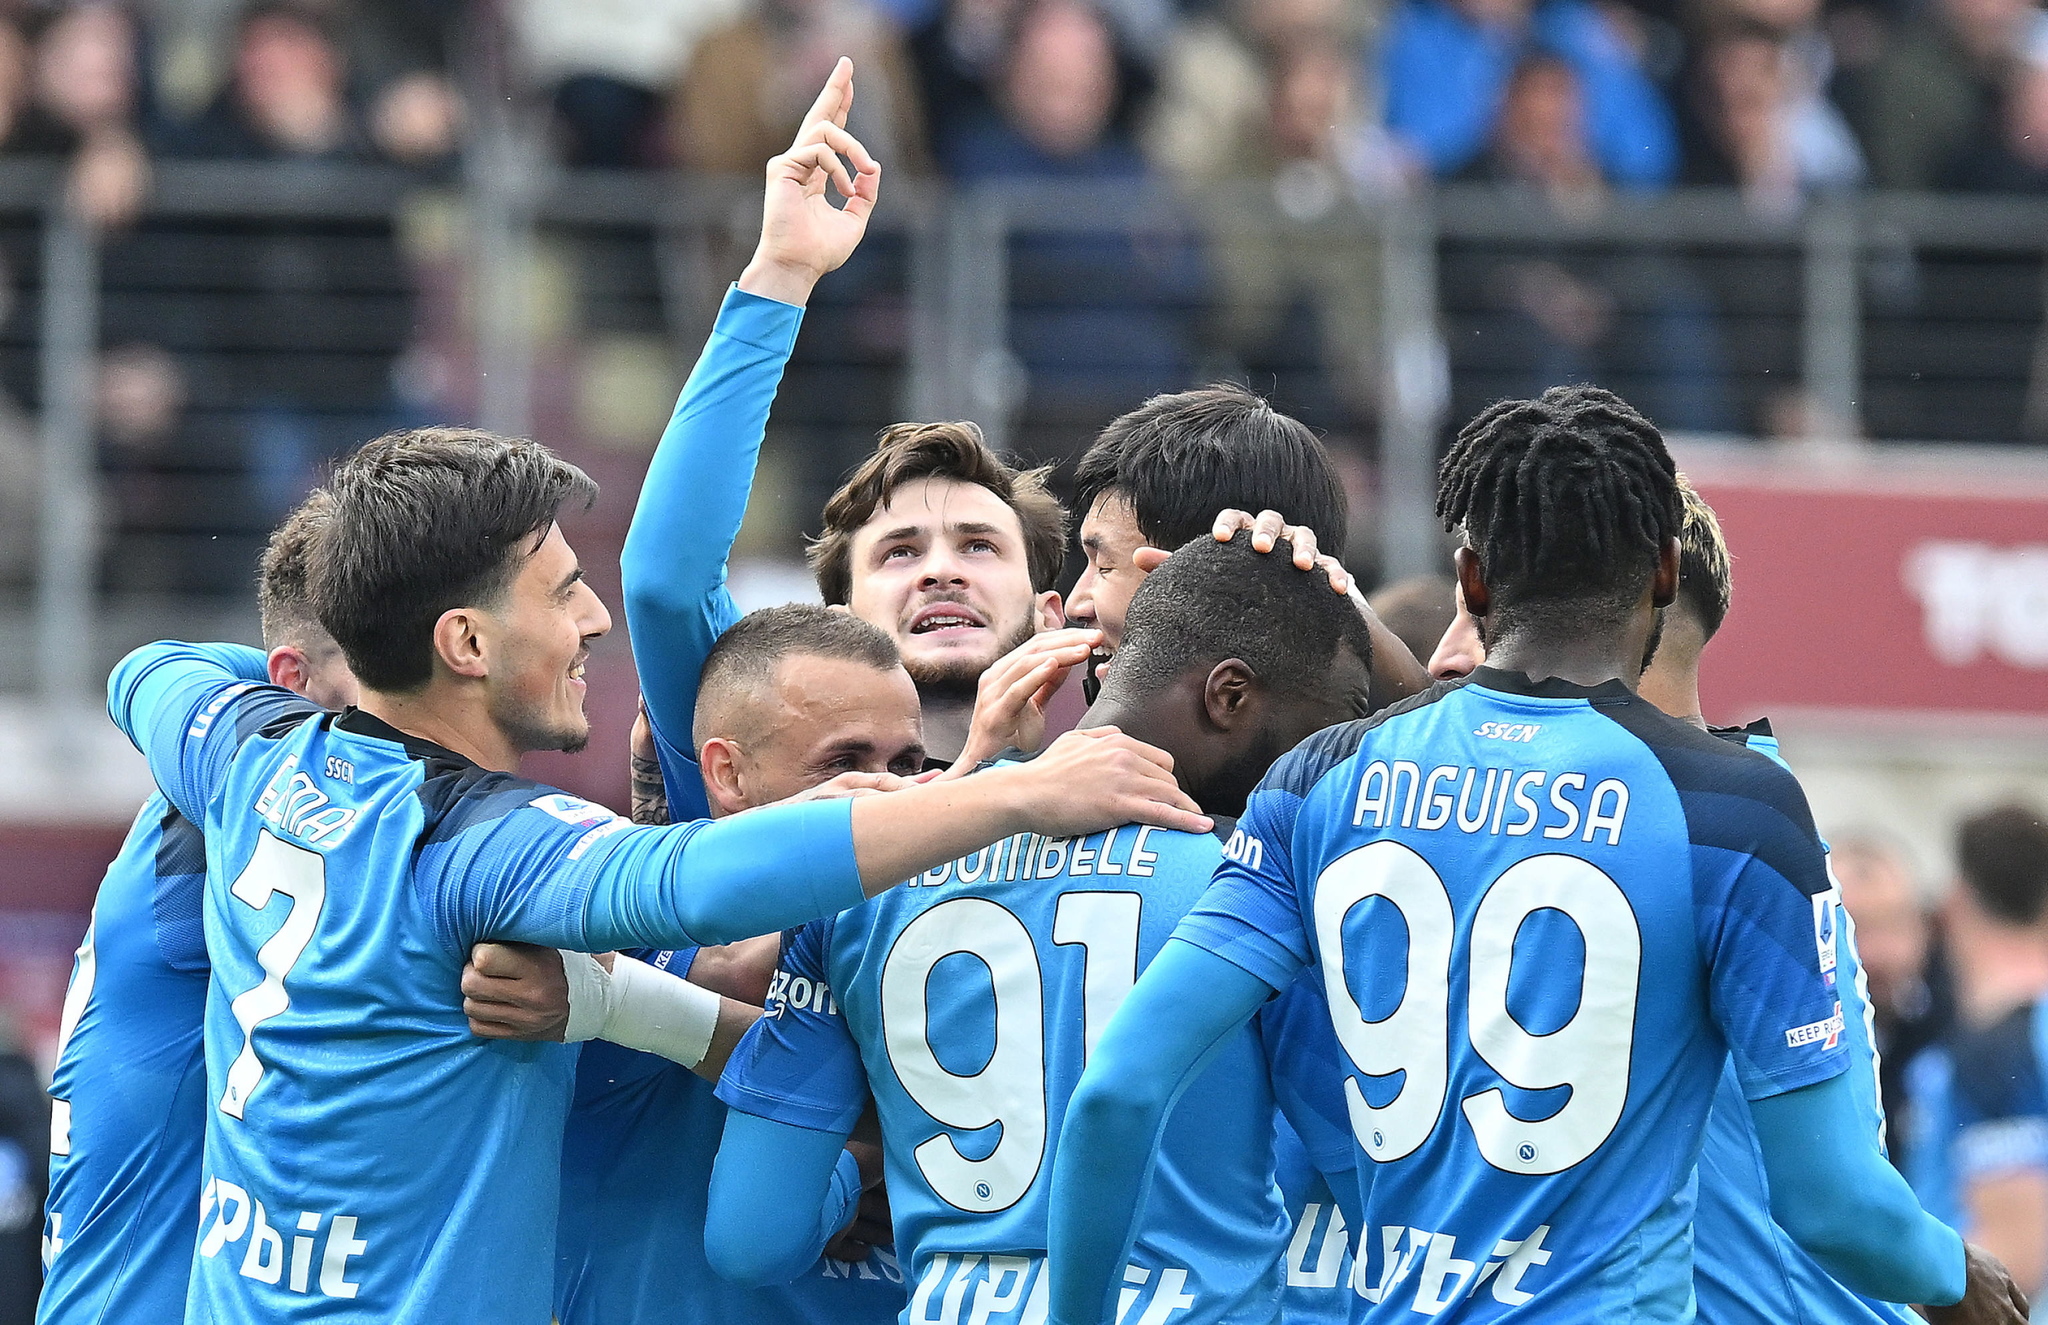 Los jugadores del Napoli festeggiano un gol.